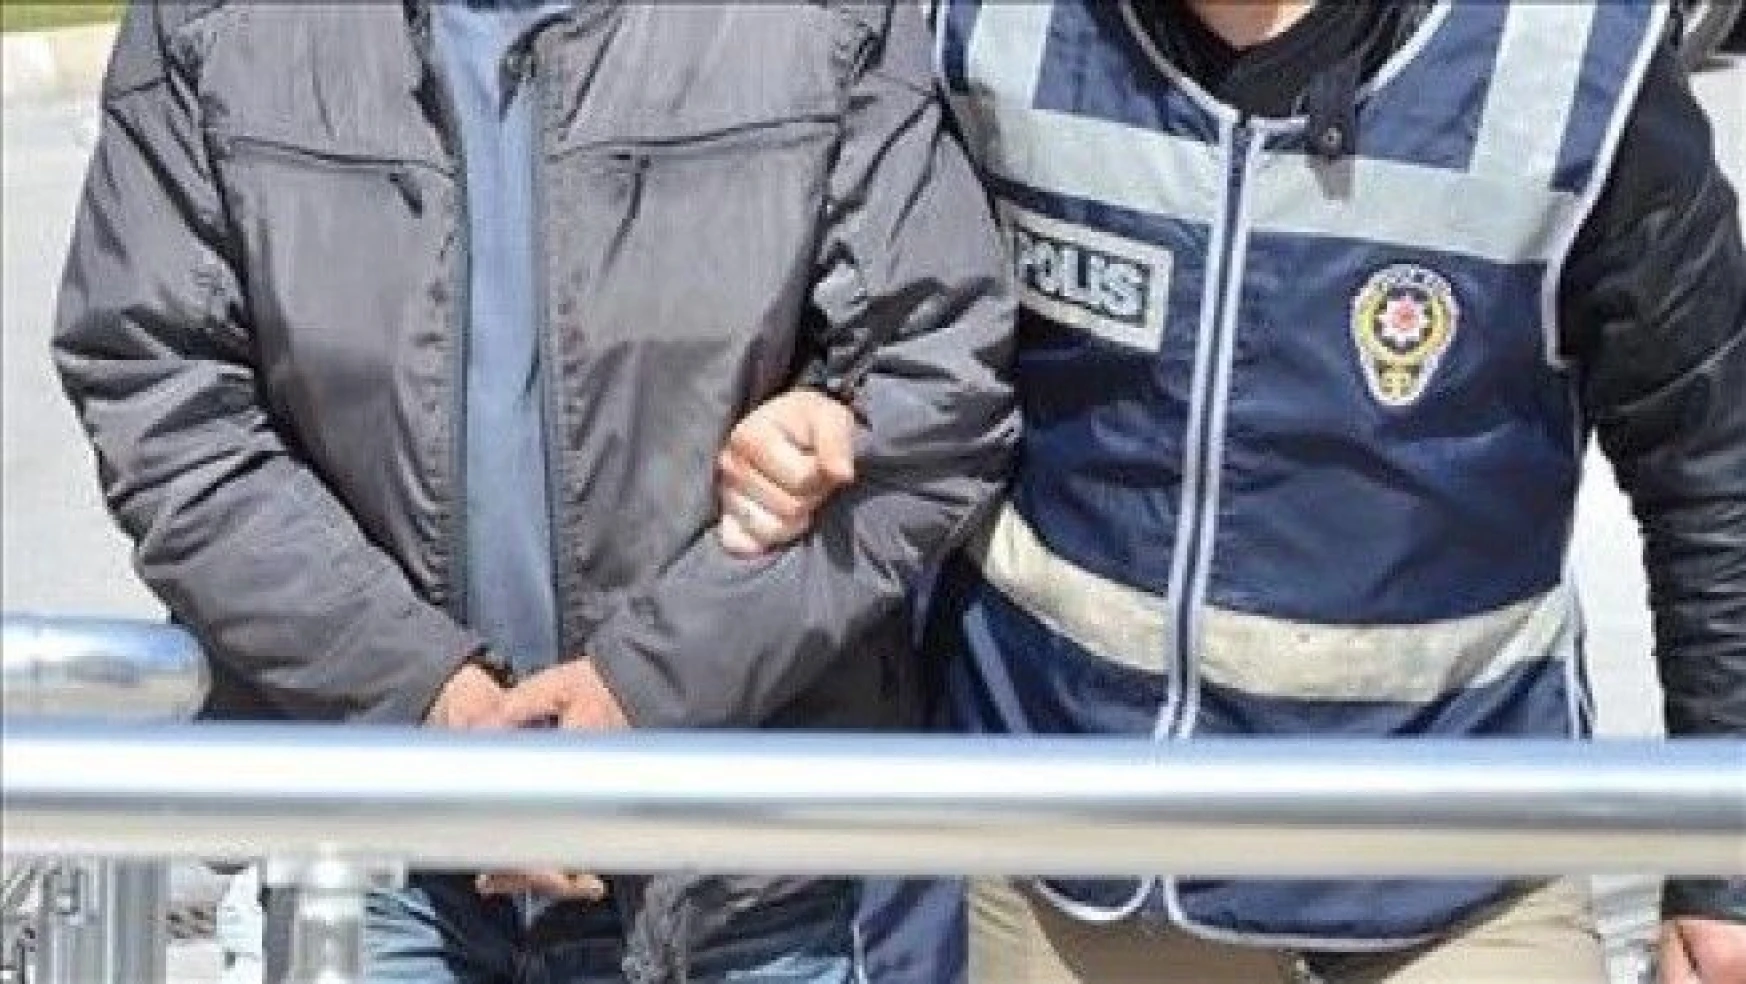 İstanbul Üniversitesi'nde kavga: 47 gözaltı